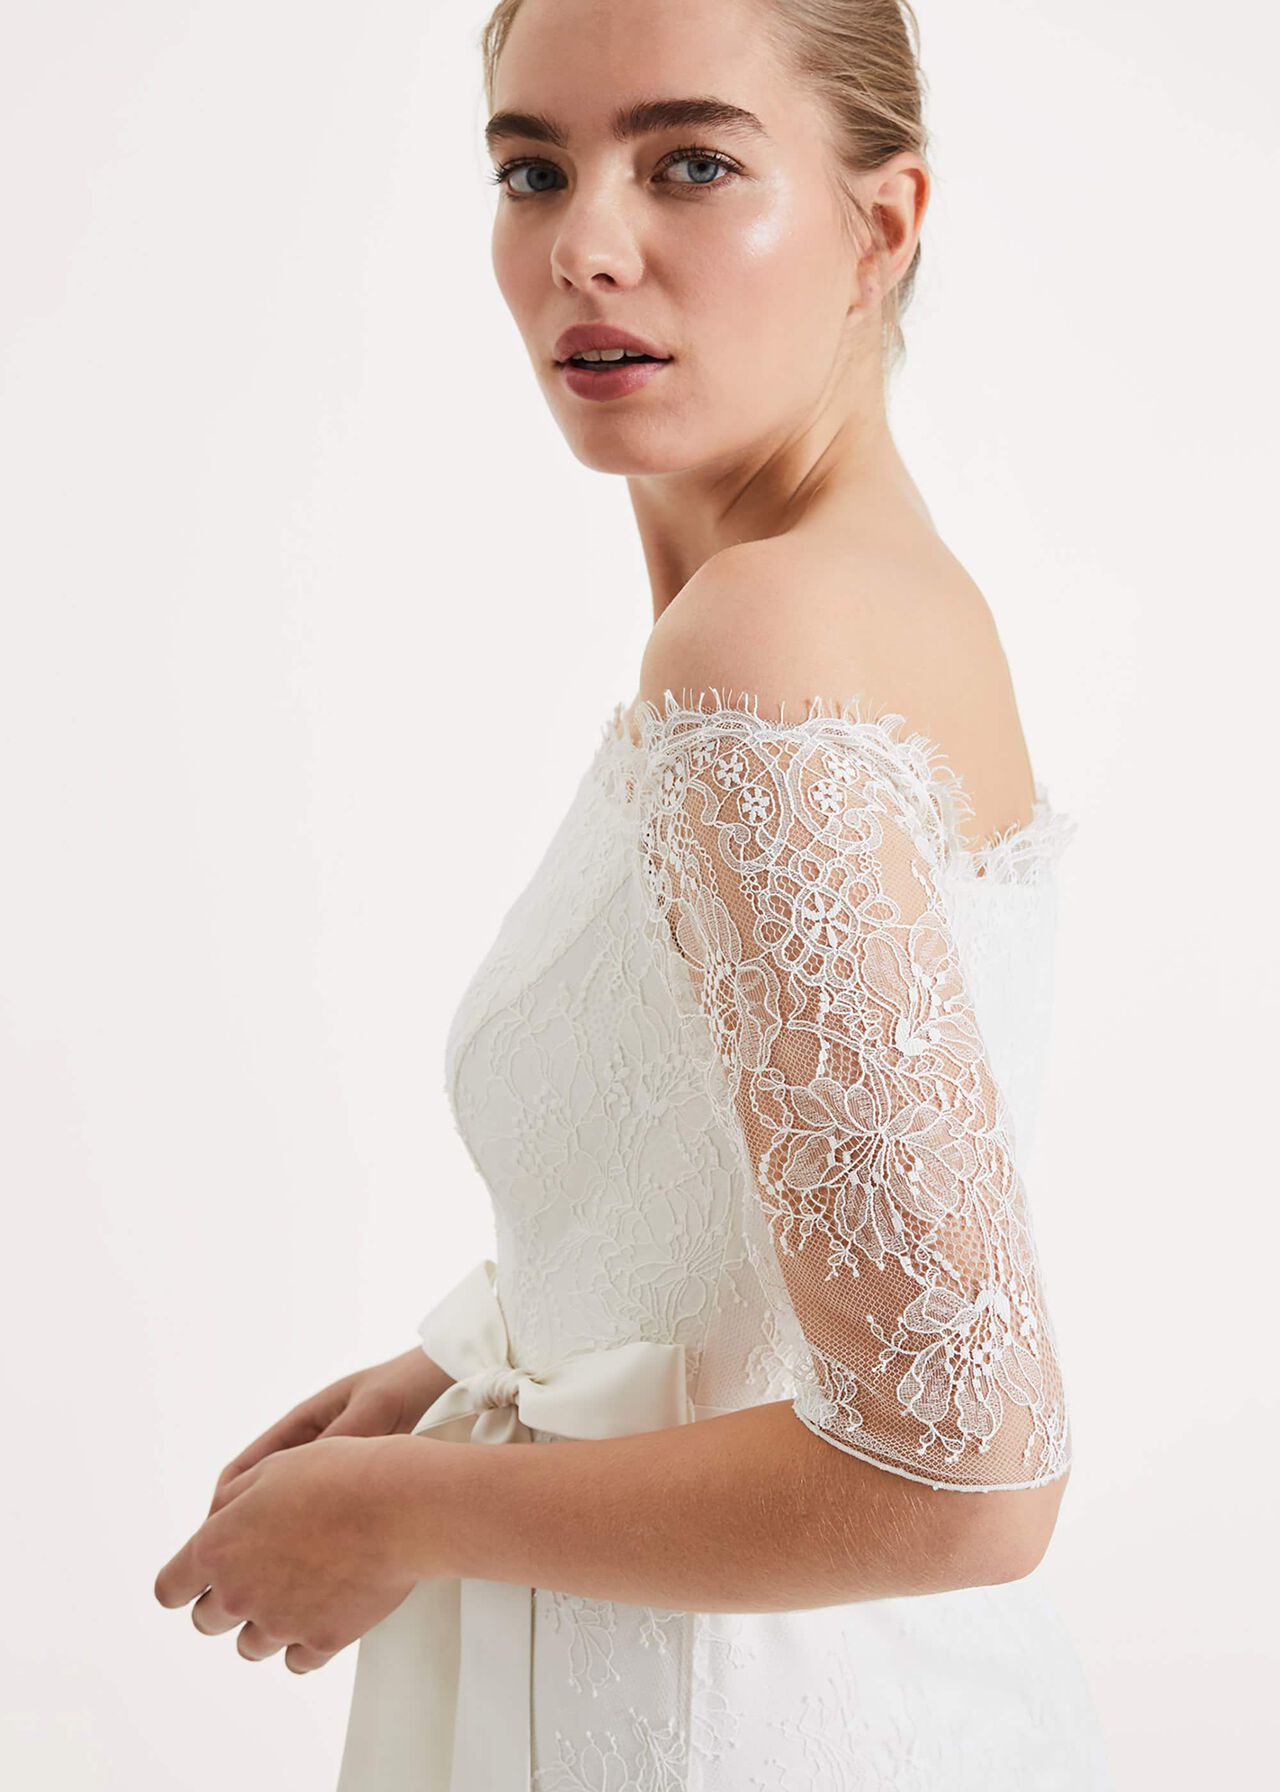 Evette Lace Wedding Dress